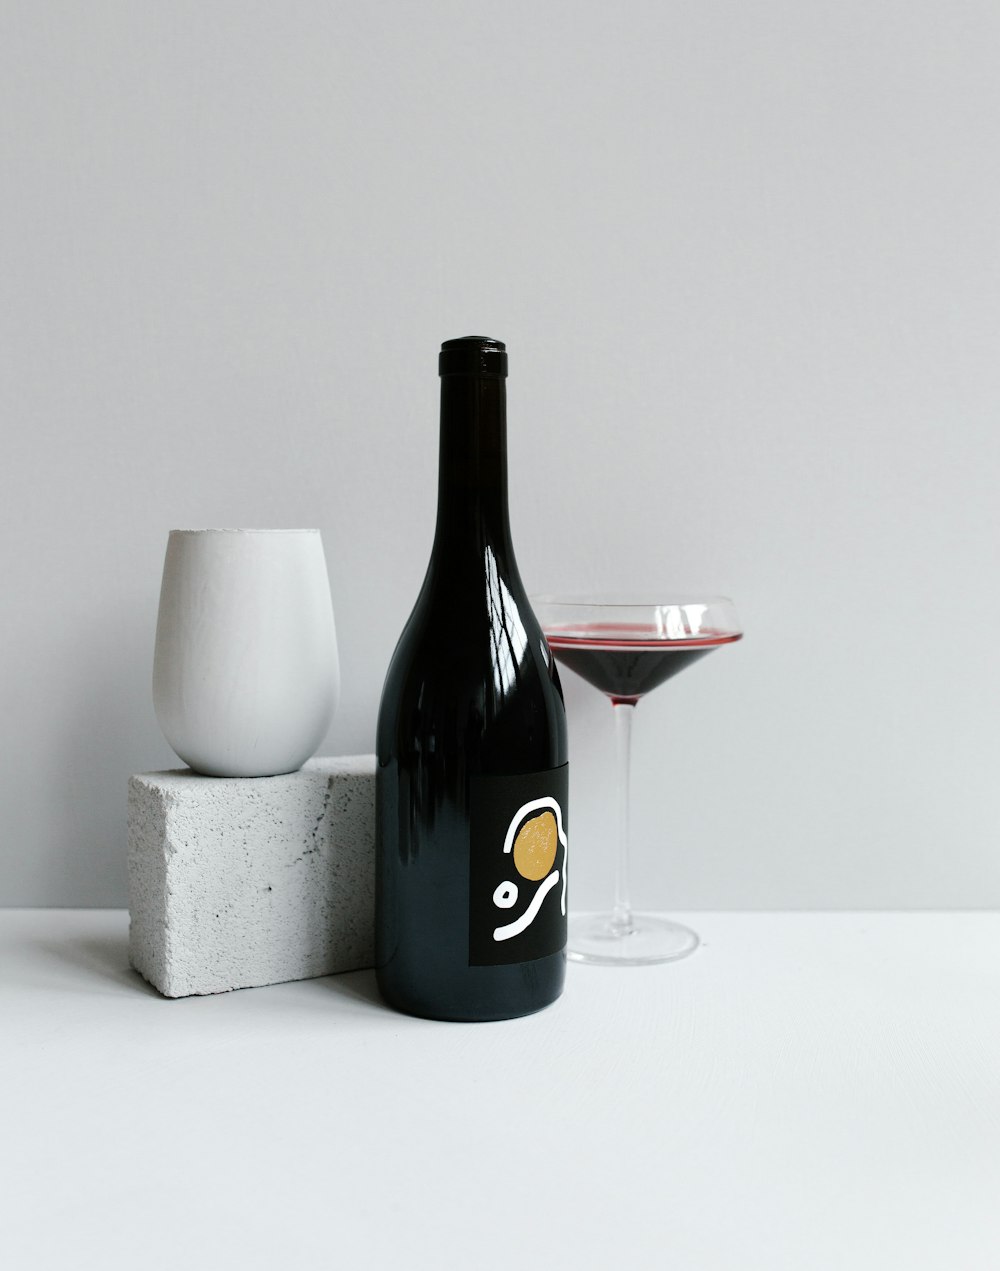 black wine bottle beside wineglass